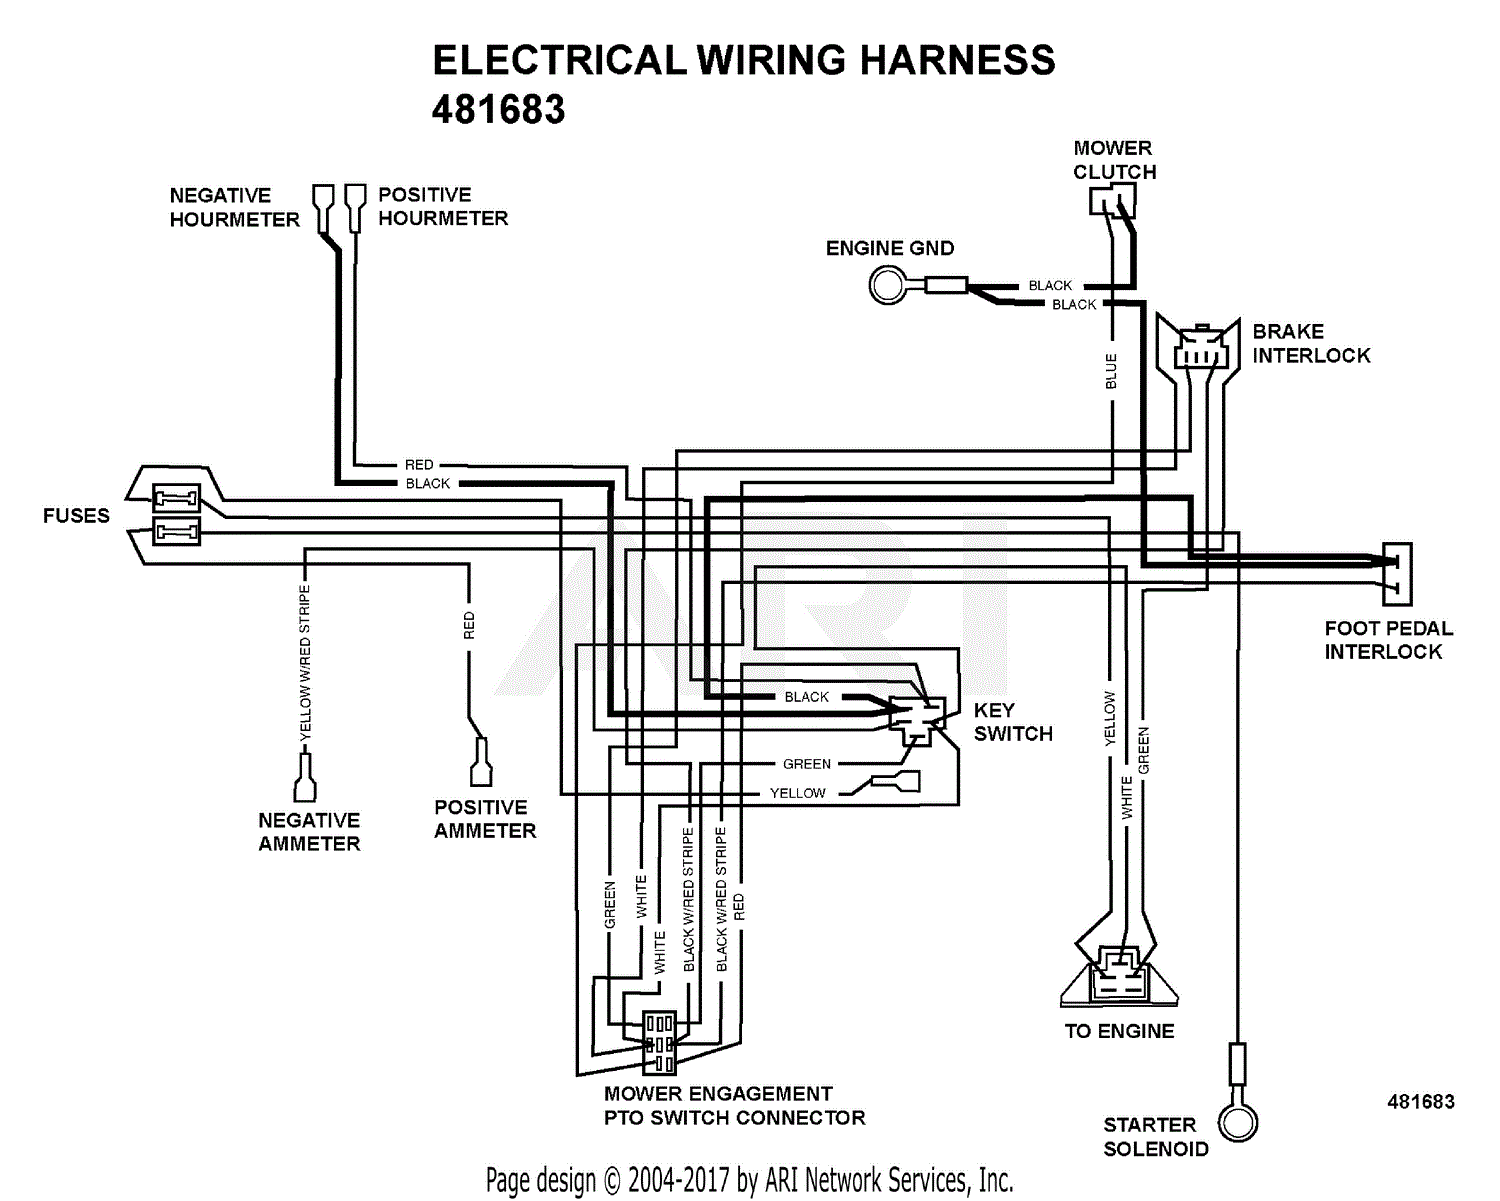 bmwwiringdiagram: 1991 Pontiac 3 1 Engine Diagram